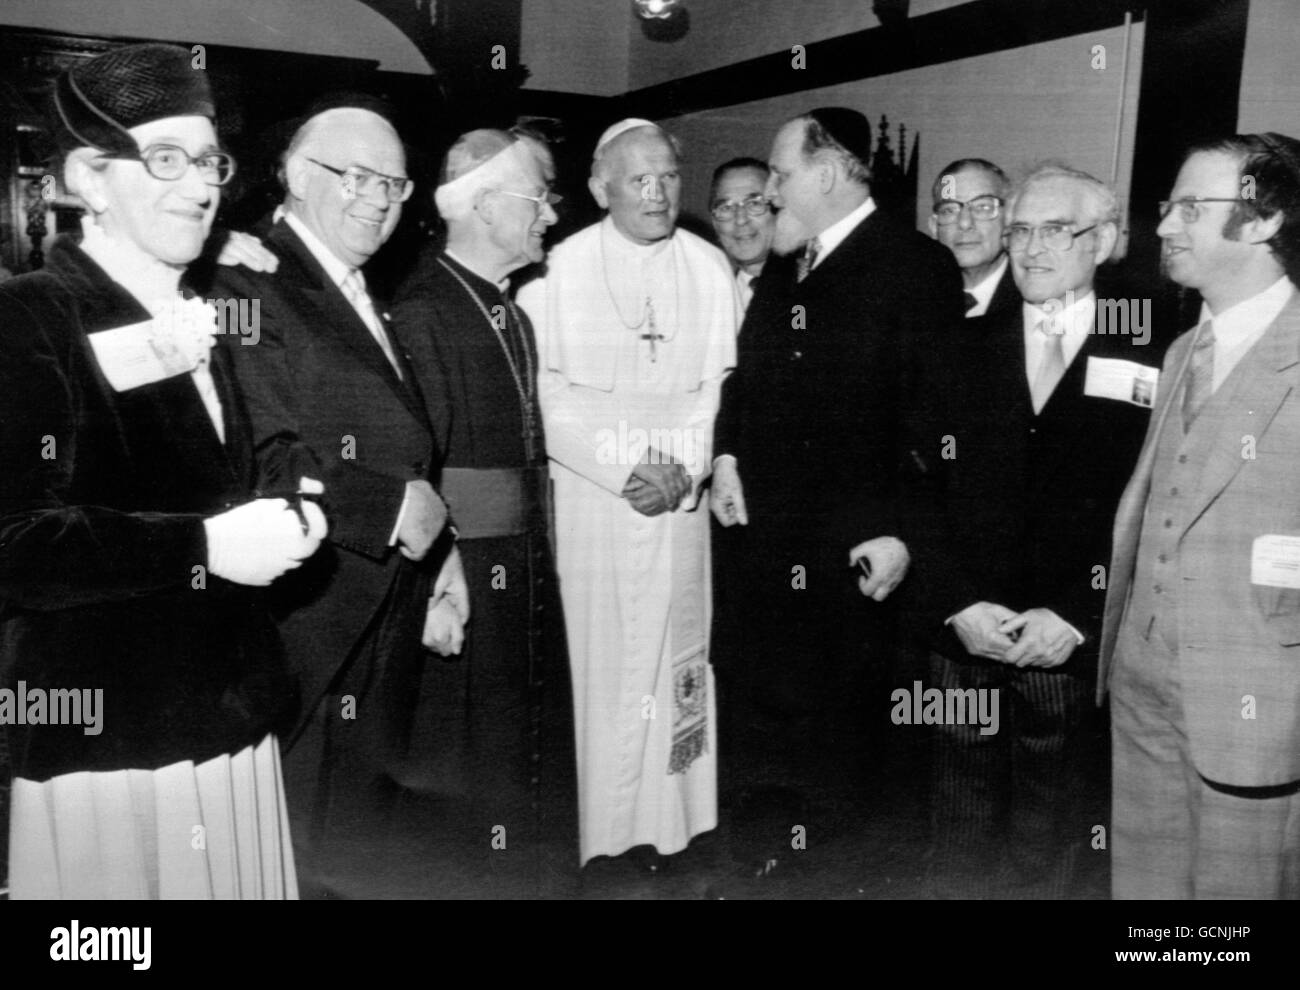 Le Pape Jean-Paul II (au centre), avec l'évêque Thomas Holland de Salford (troisième à gauche), mets le Grand Rabbin du Royaume-Uni, Sir Emmanuel Jakobovits (quatrième à droite), ainsi que d'autres dignitaires juifs, au couvent des pauvres Soeurs de Nazareth à Manchester. Banque D'Images